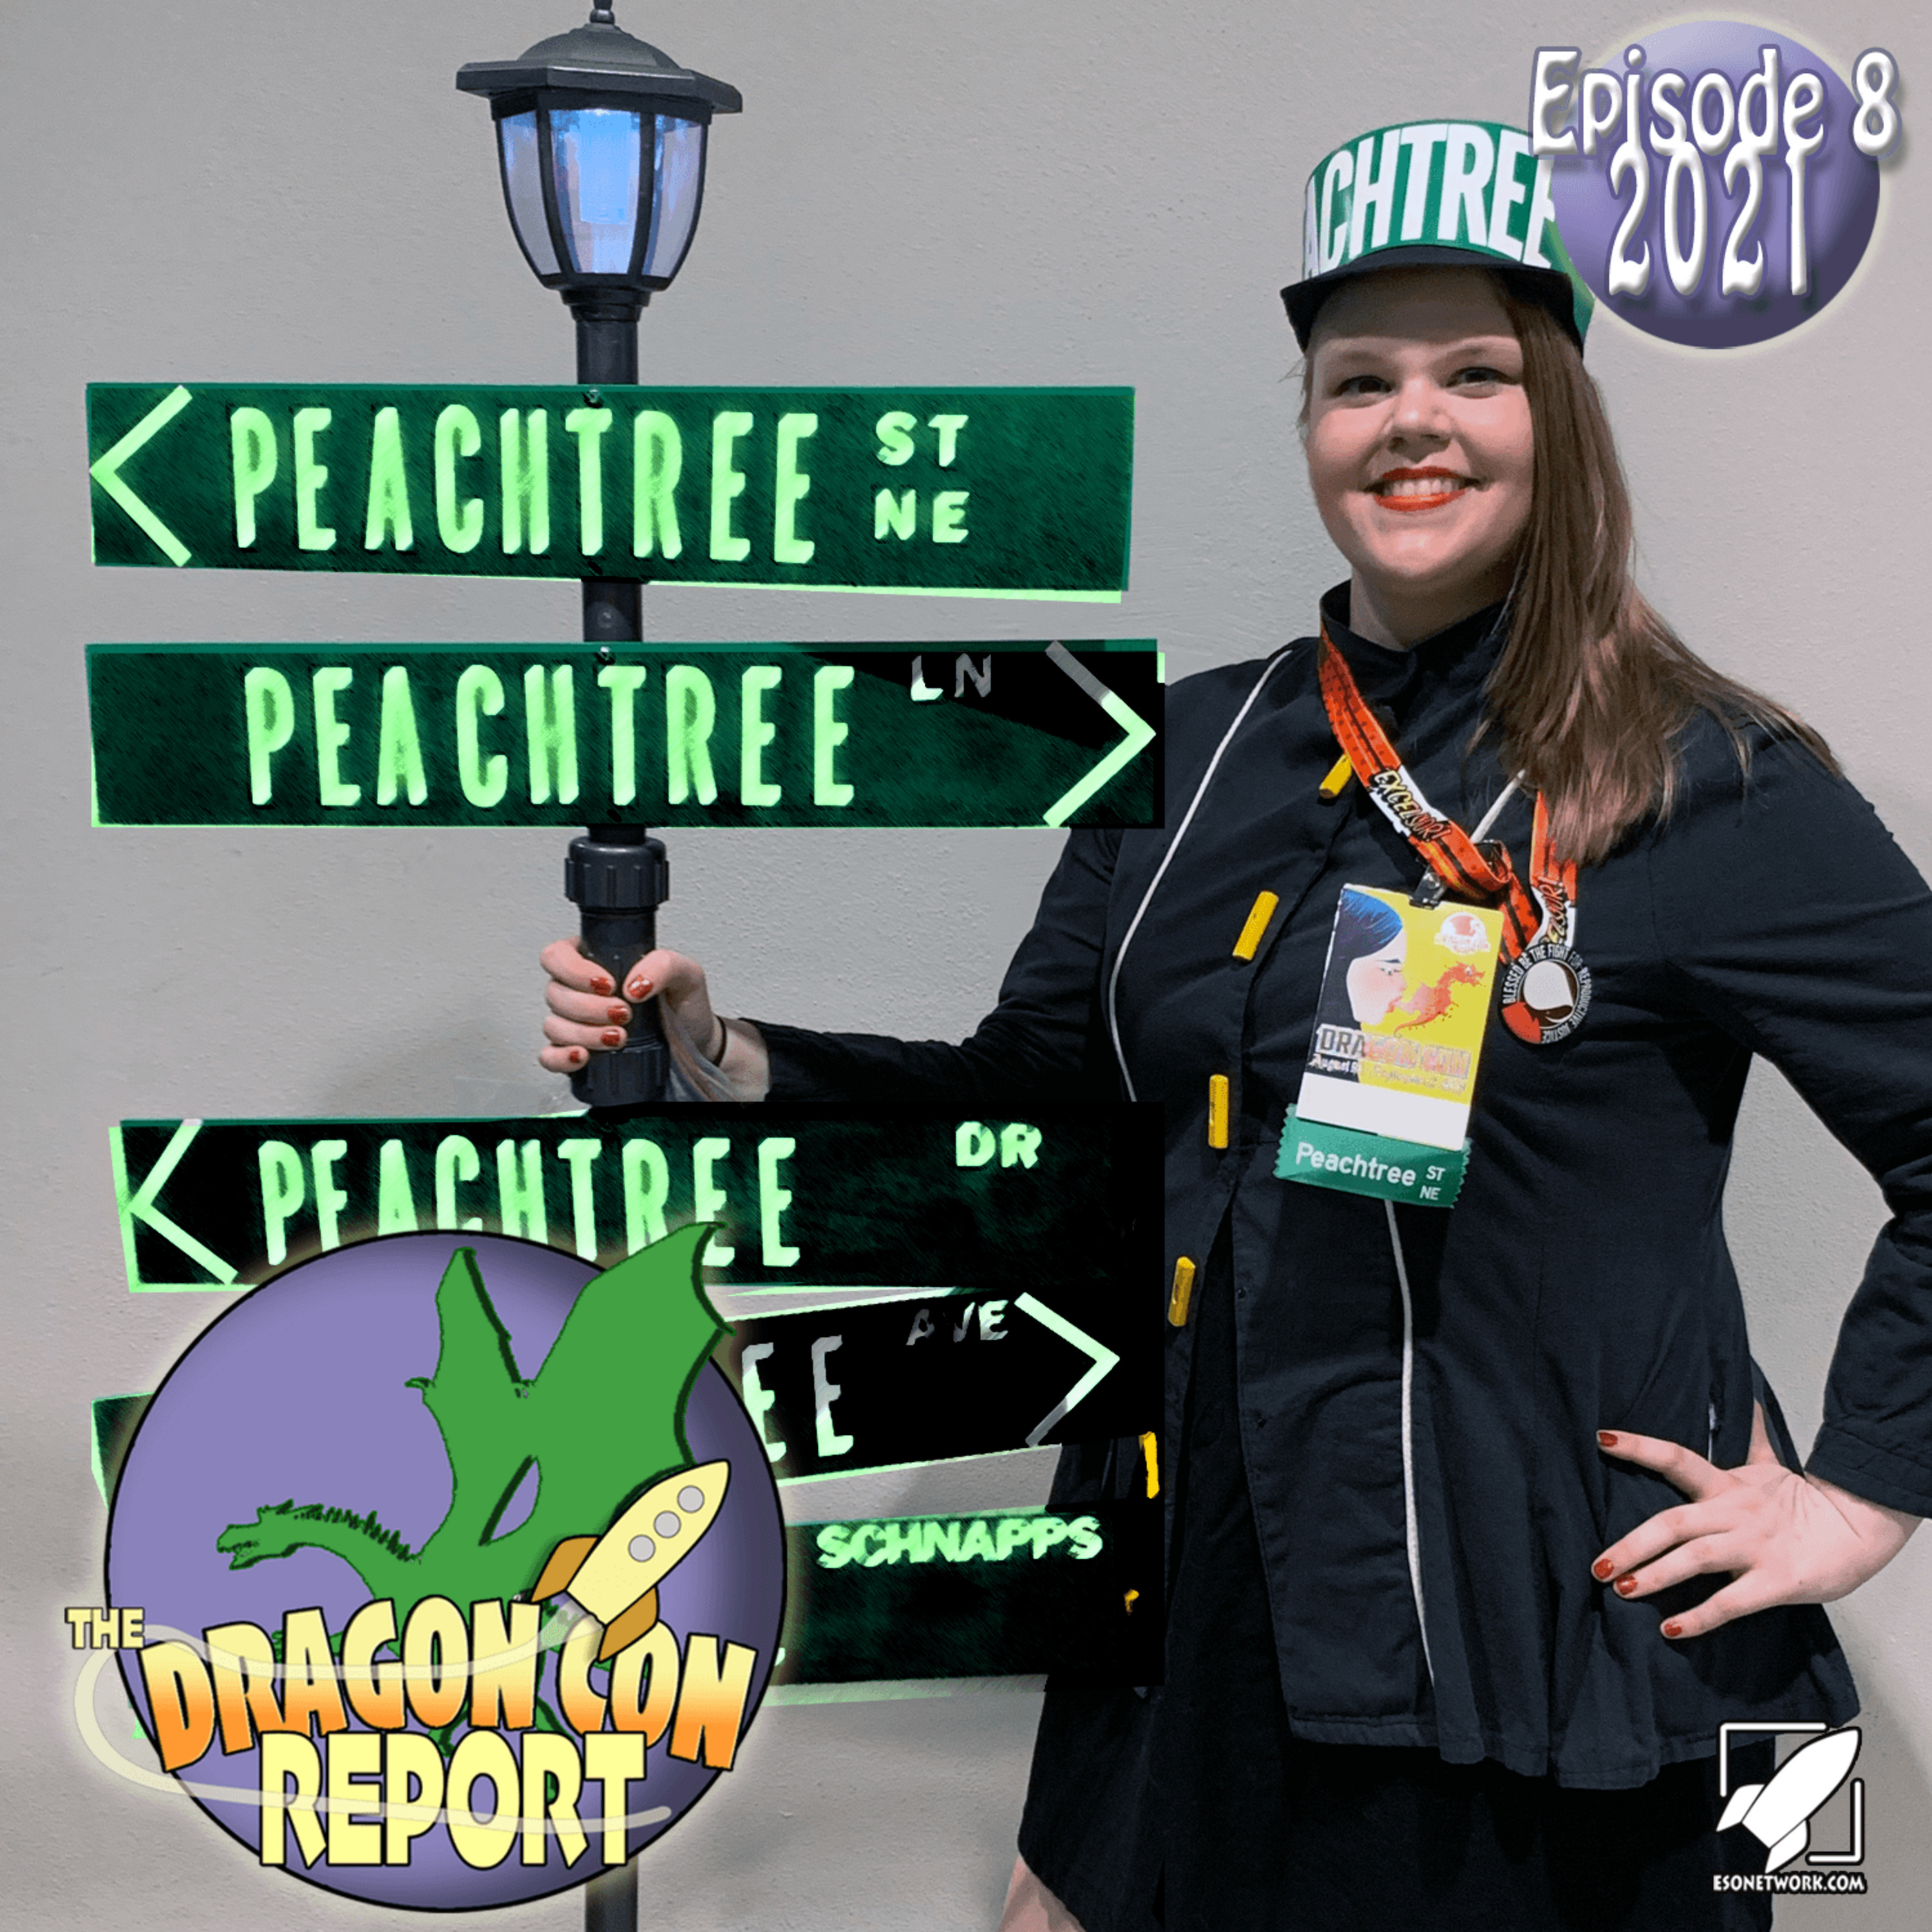 The 2021 Dragon Con Report Episode 8